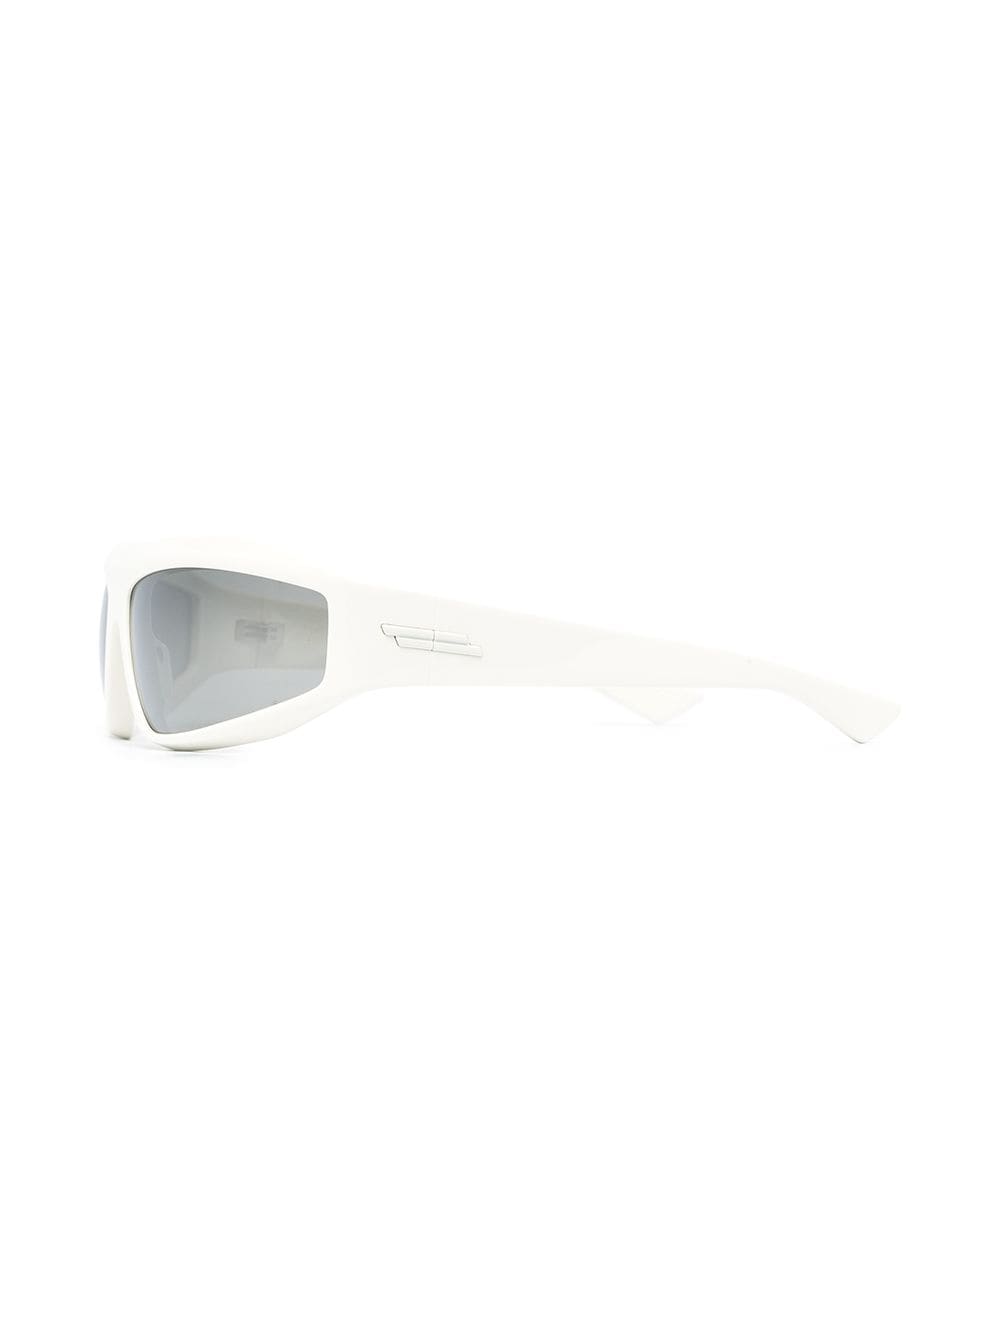 фото Bottega veneta eyewear солнцезащитные очки с затемненными линзами